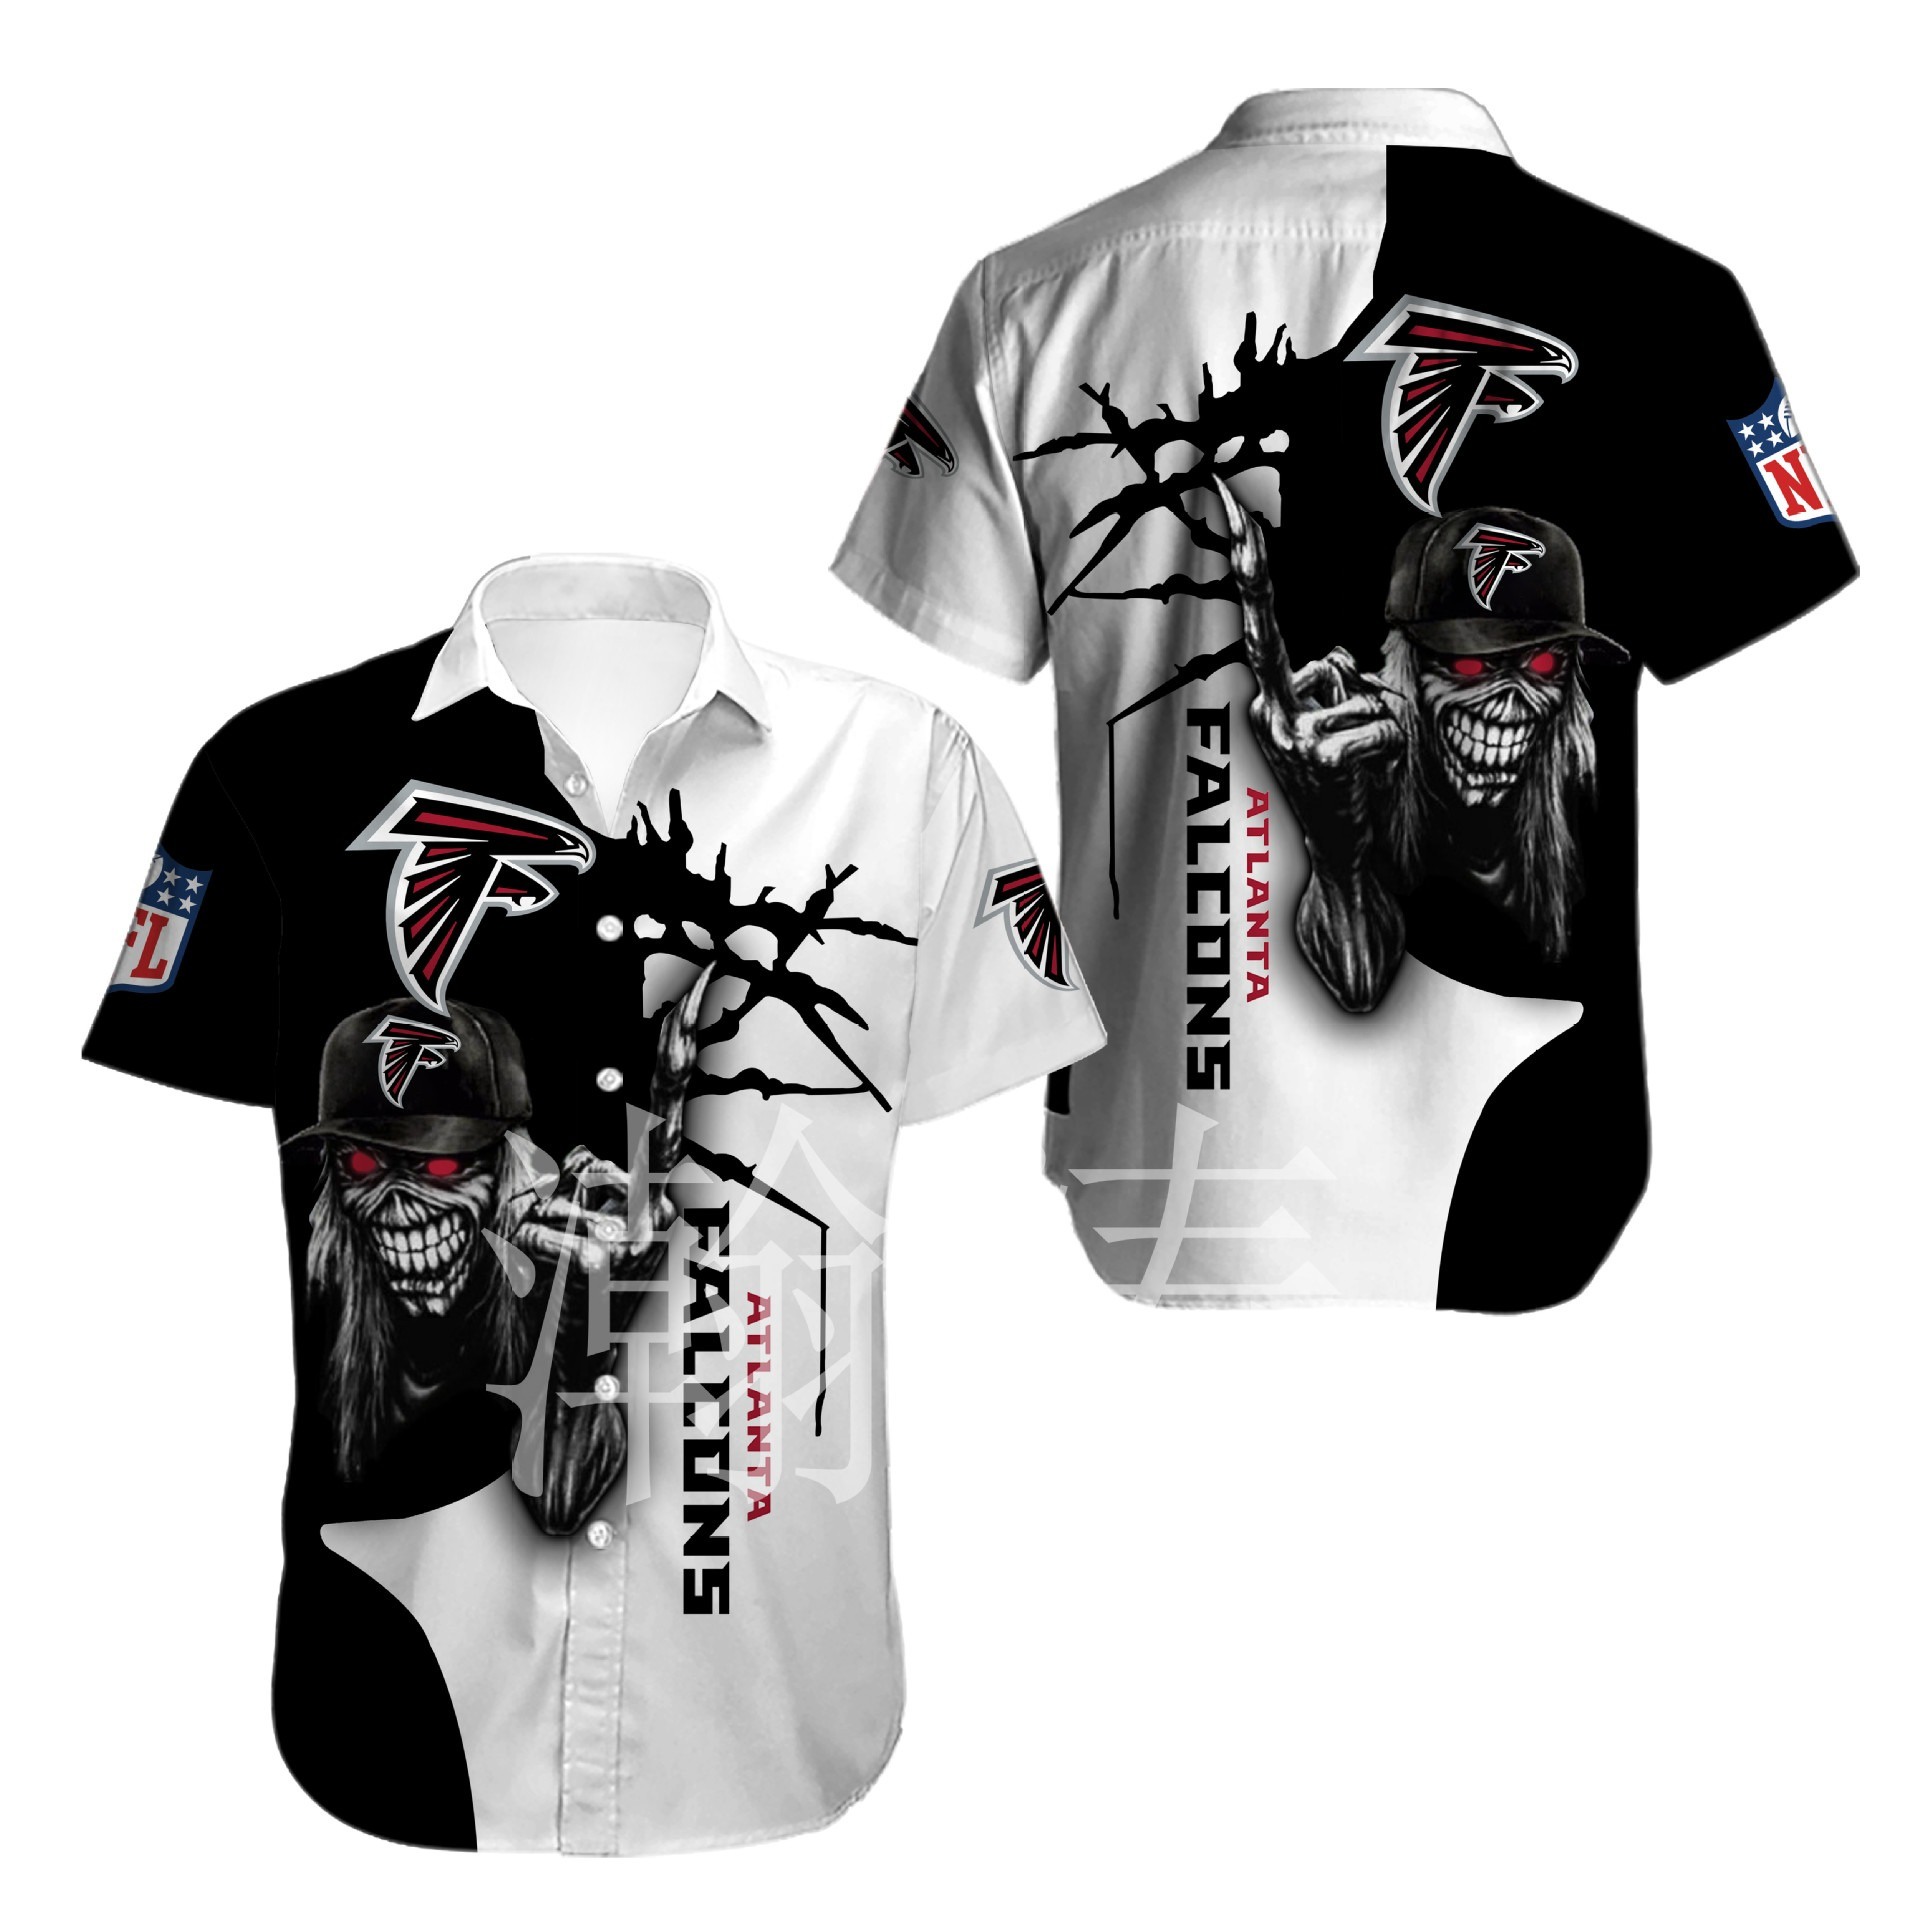 Atlanta Falcons button-up shirt Iron Maiden gift for Halloween